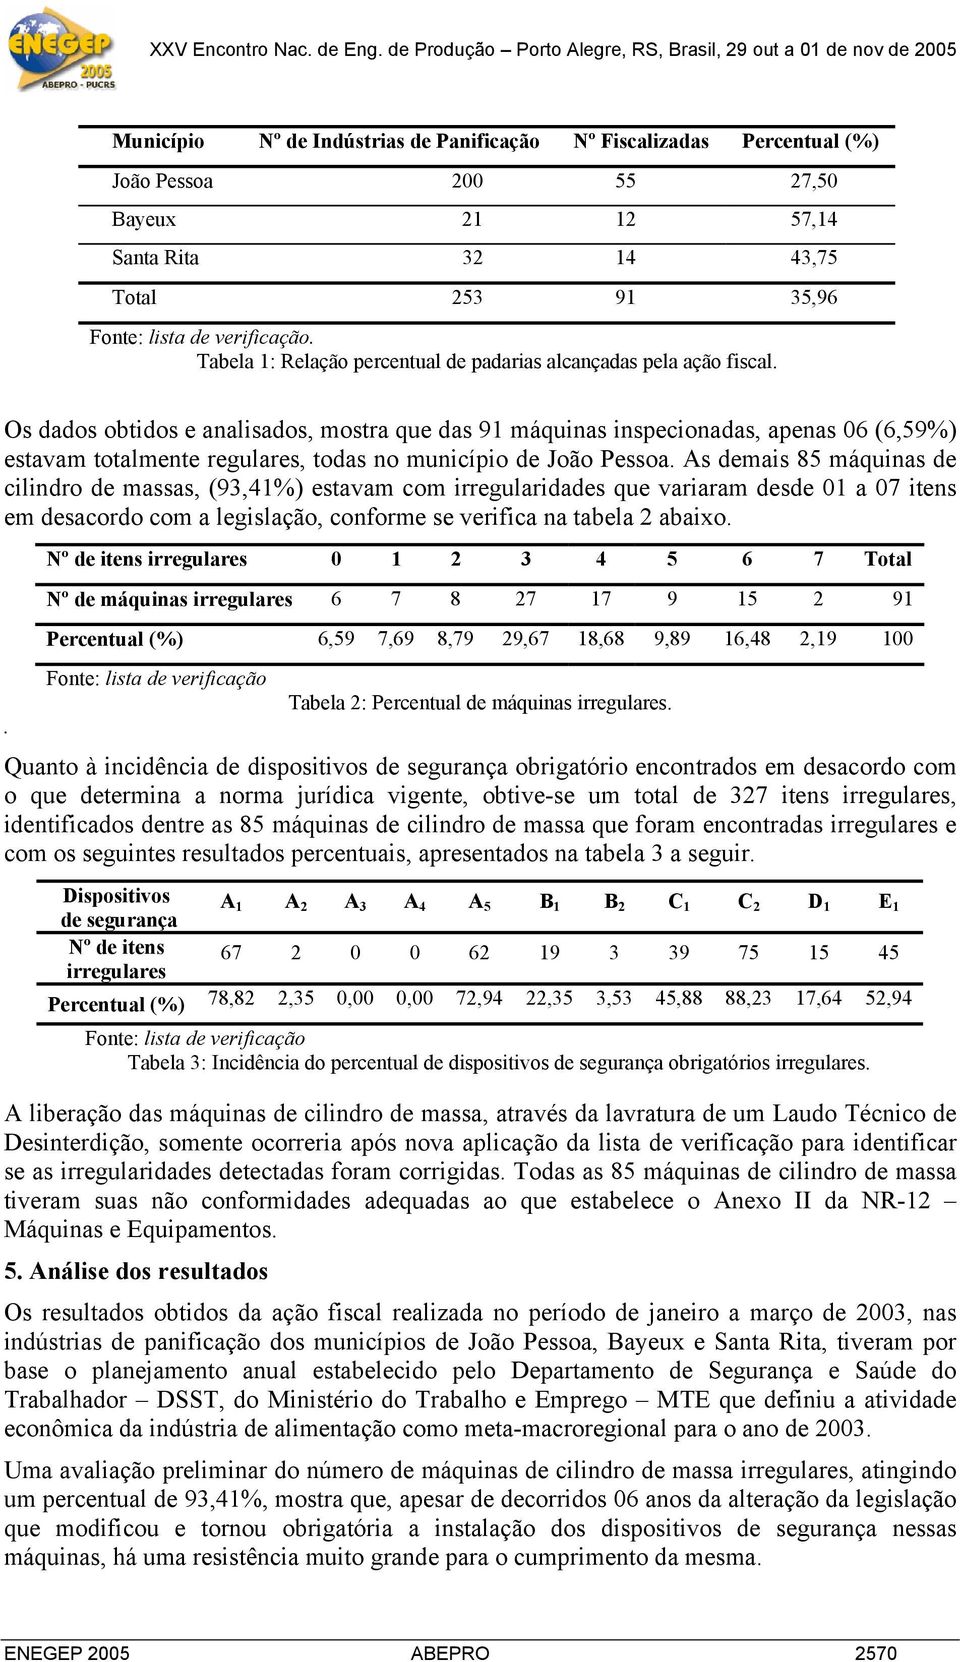 Os dados obtidos e analisados, mostra que das 91 máquinas inspecionadas, apenas 06 (6,59%) estavam totalmente regulares, todas no município de João Pessoa.